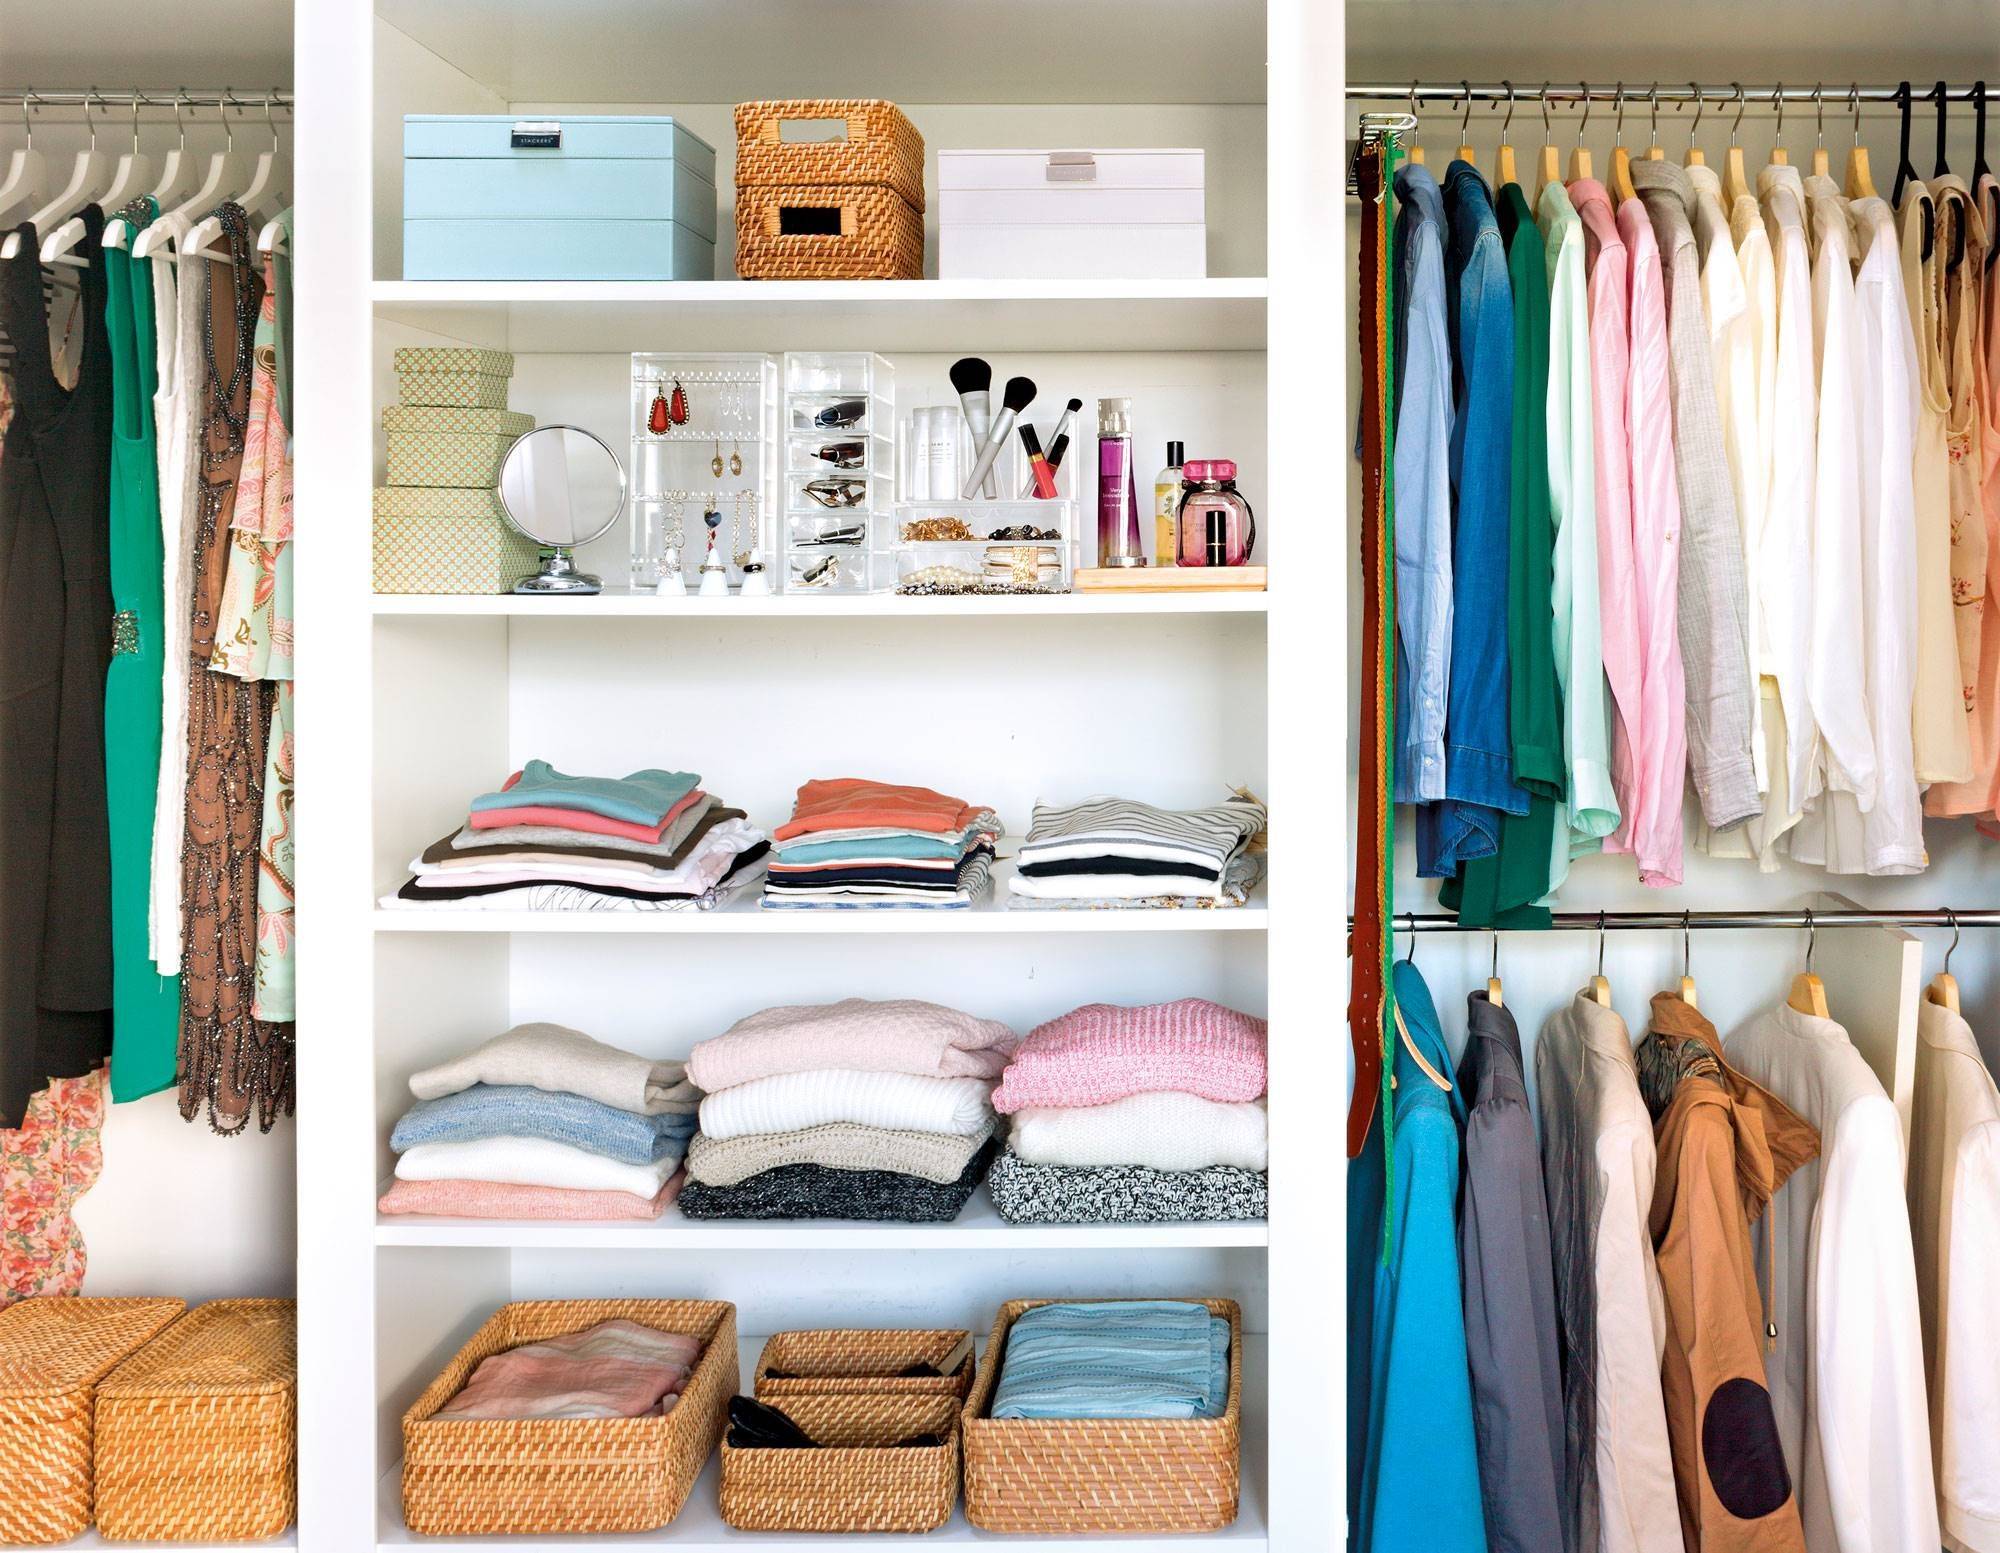 Как наводить порядок в шкафу для одежды: советы по организации внутреннего пространства шкафа